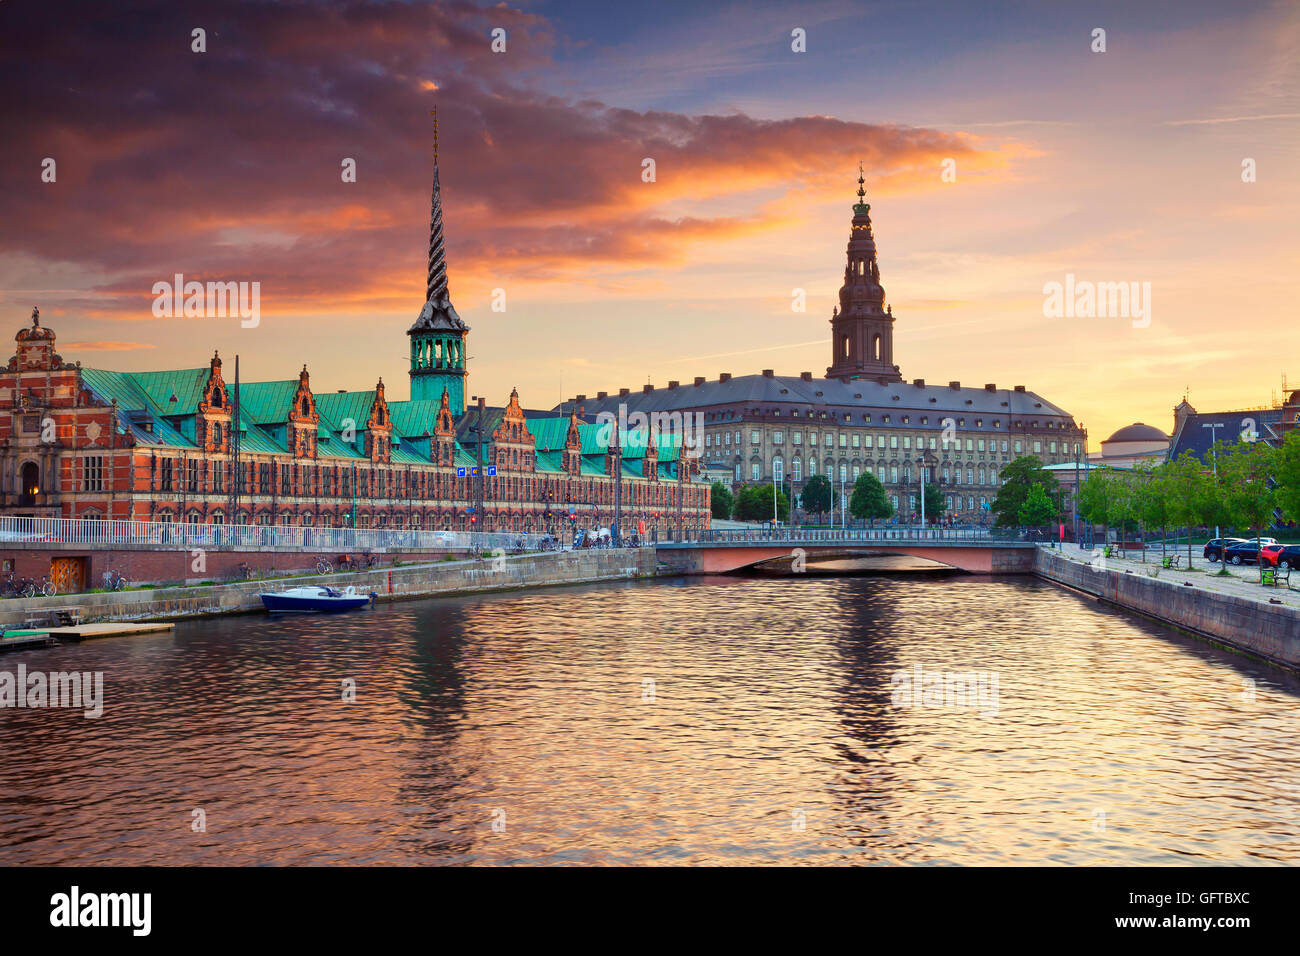 Copenhague. image de Copenhague, Danemark au cours de la magnifique coucher de soleil. Banque D'Images